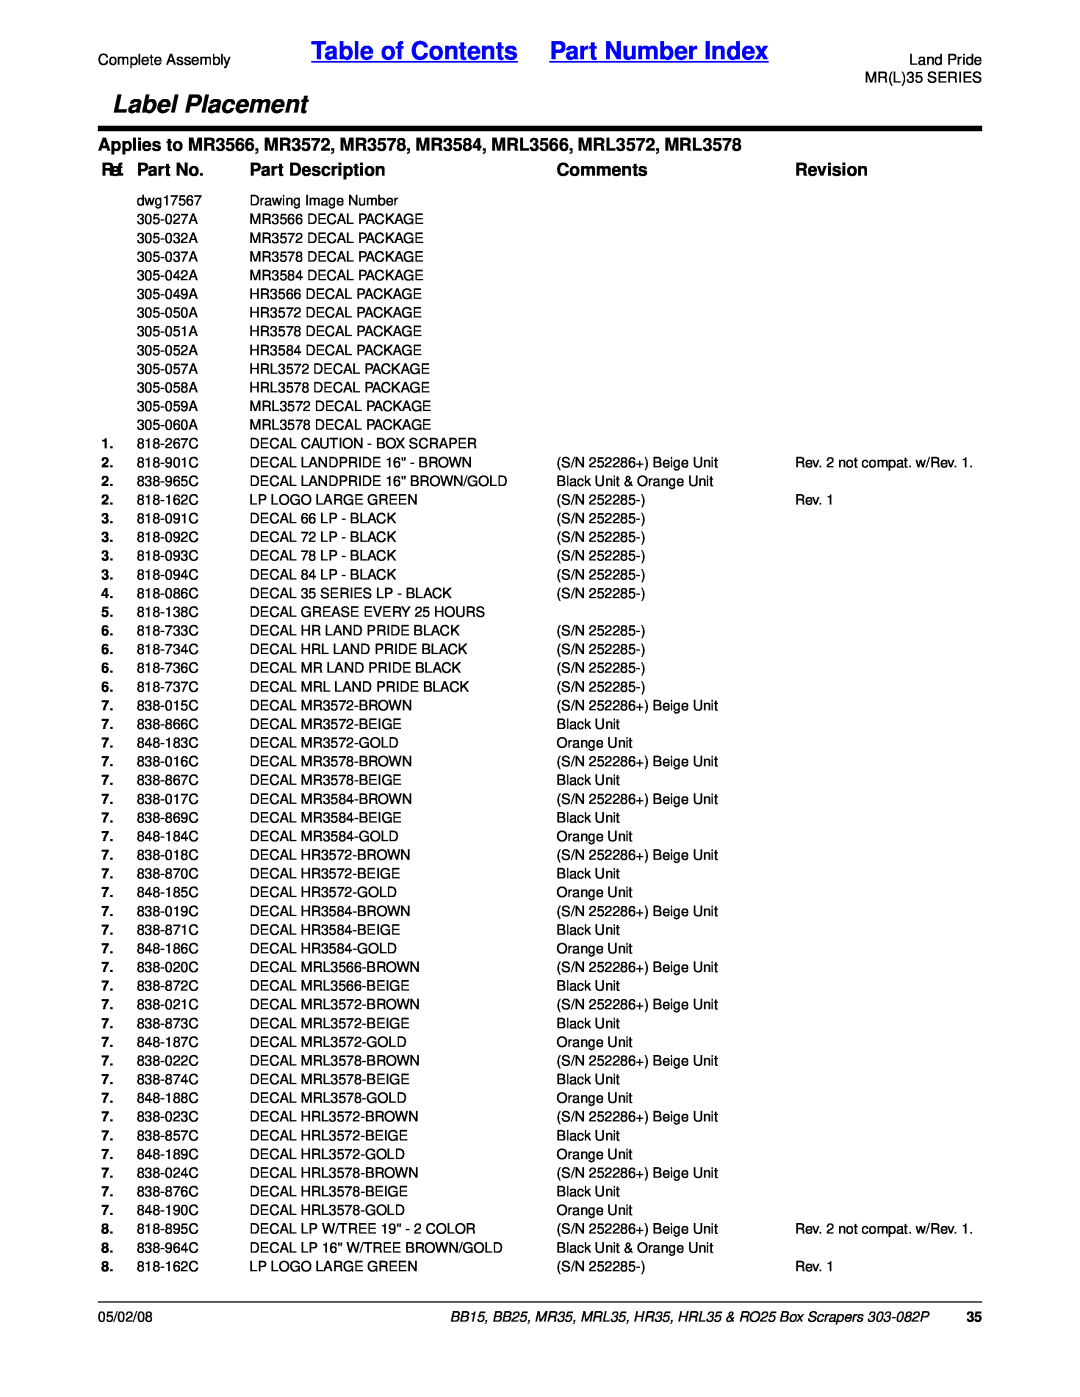 Land Pride MR35 Table of Contents Part Number Index, Label Placement, Ref. Part No, Part Description, Comments, Revision 